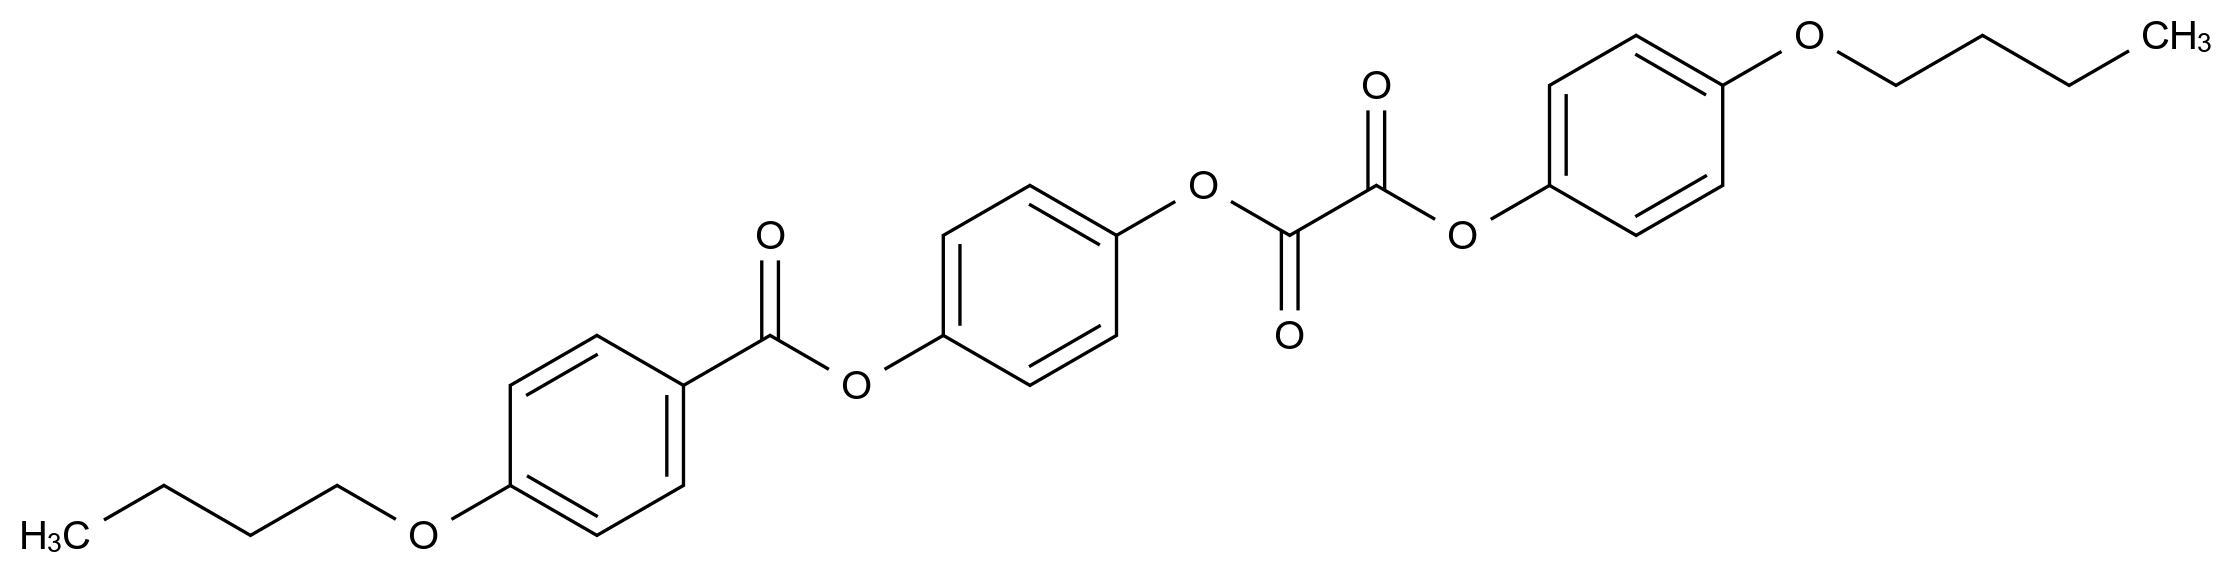 2-O-[4-(4-butoxybenzoyl)oxyphenyl] 1-O-(4-butoxyphenyl) oxalate_108802-34-2